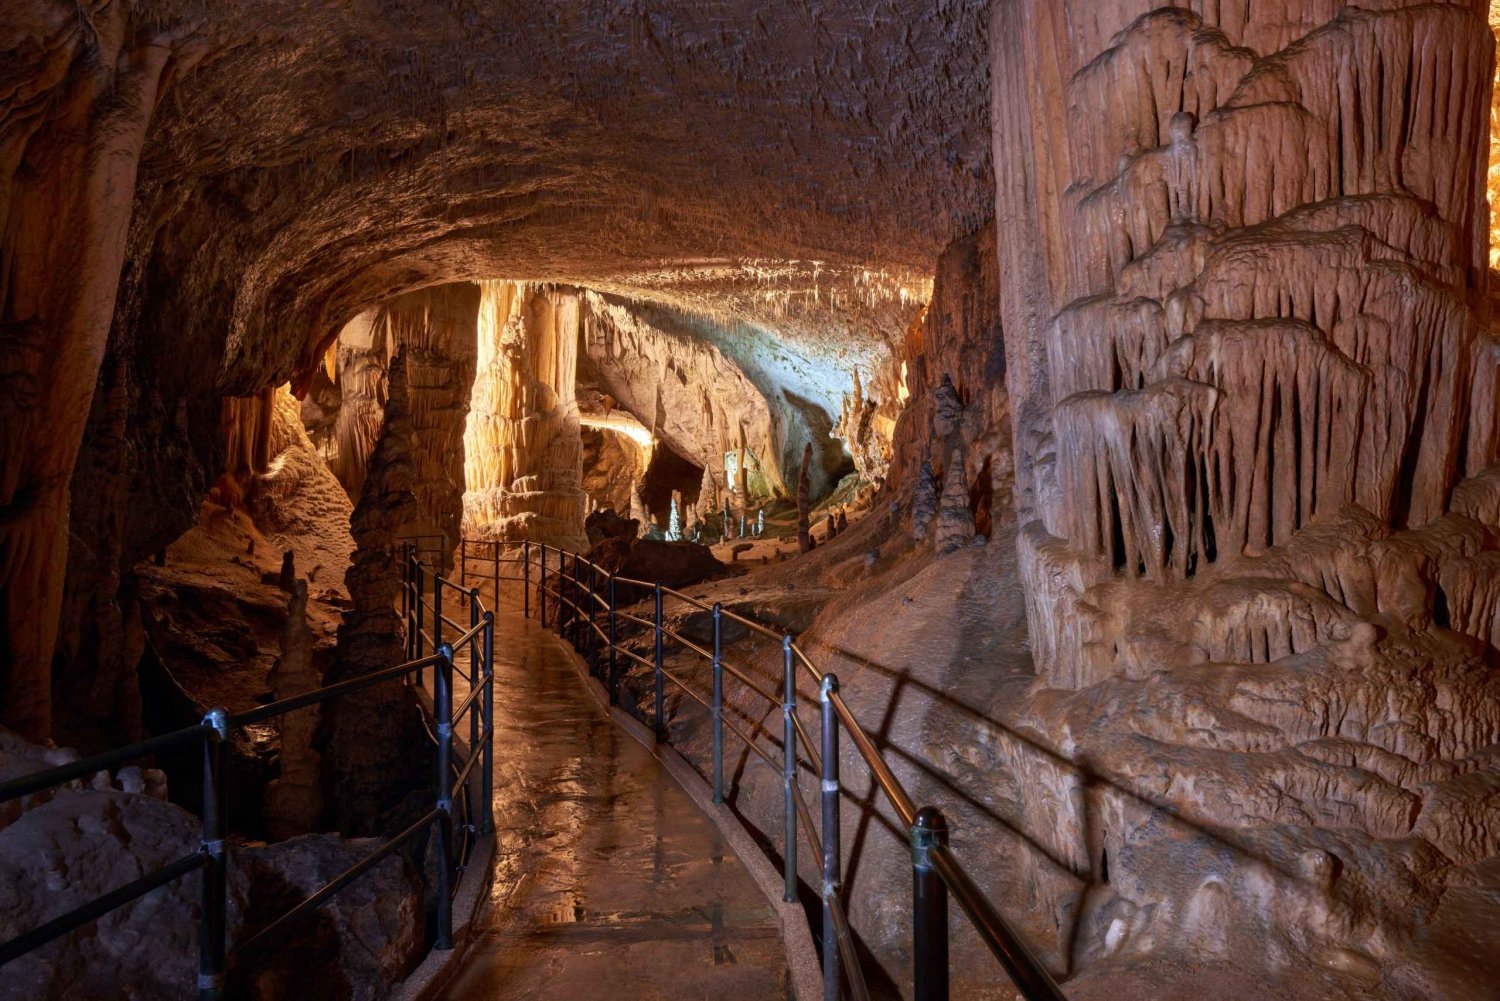 Au départ de Kranjska Gora : Excursion d'une journée à la grotte de Postojna et au château de Predjama